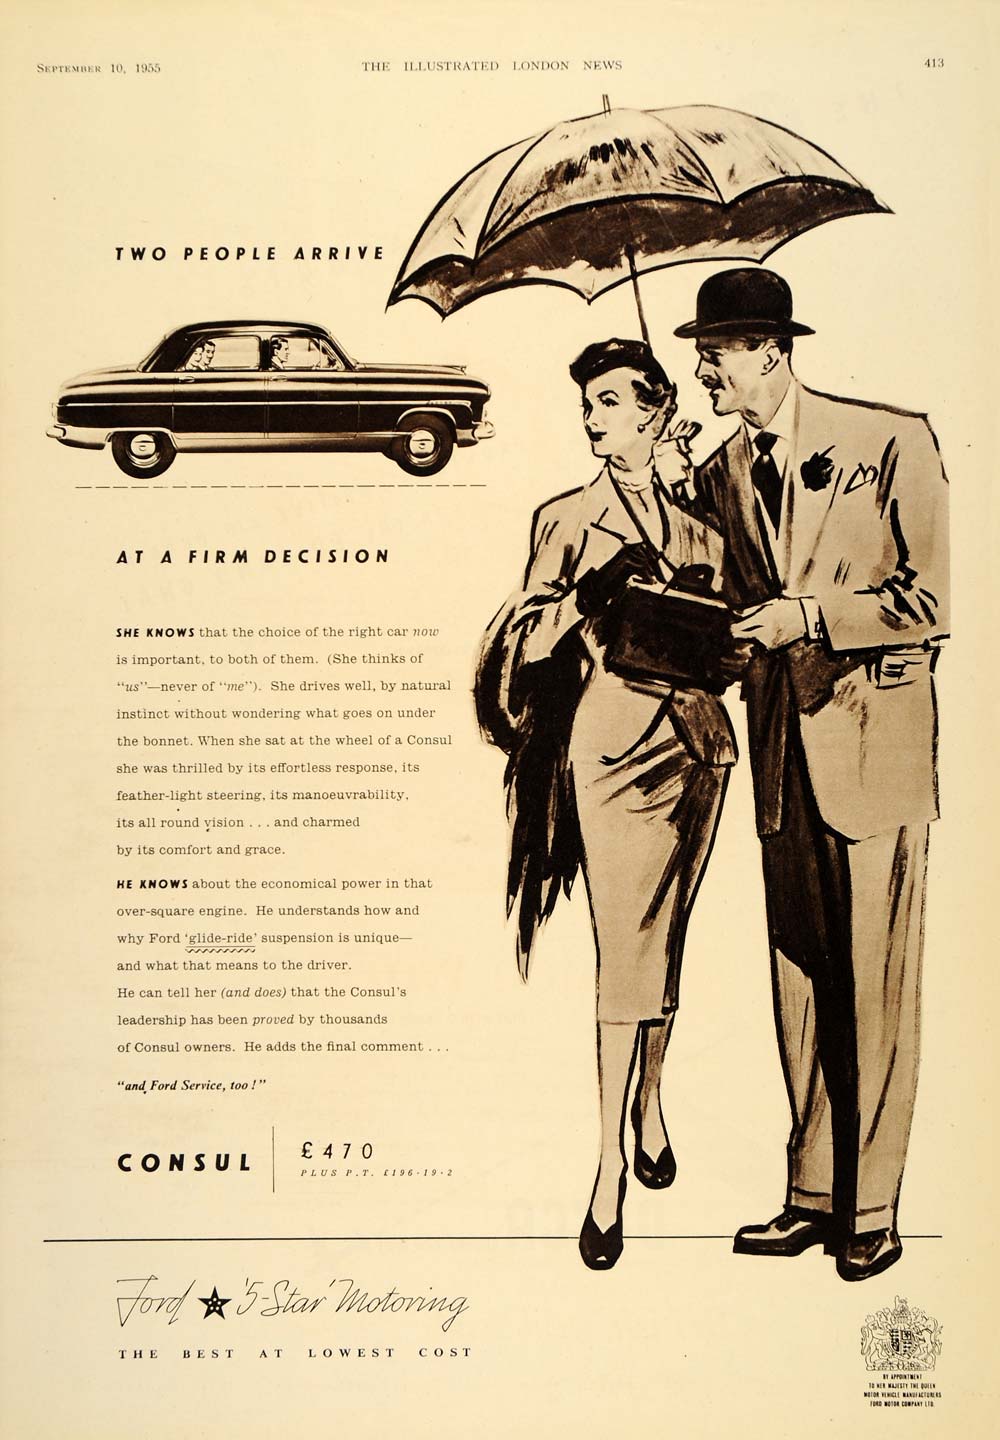 1955 Ad British Ford Consul Automobile Car Umbrella - ORIGINAL ADVERTISING LN1